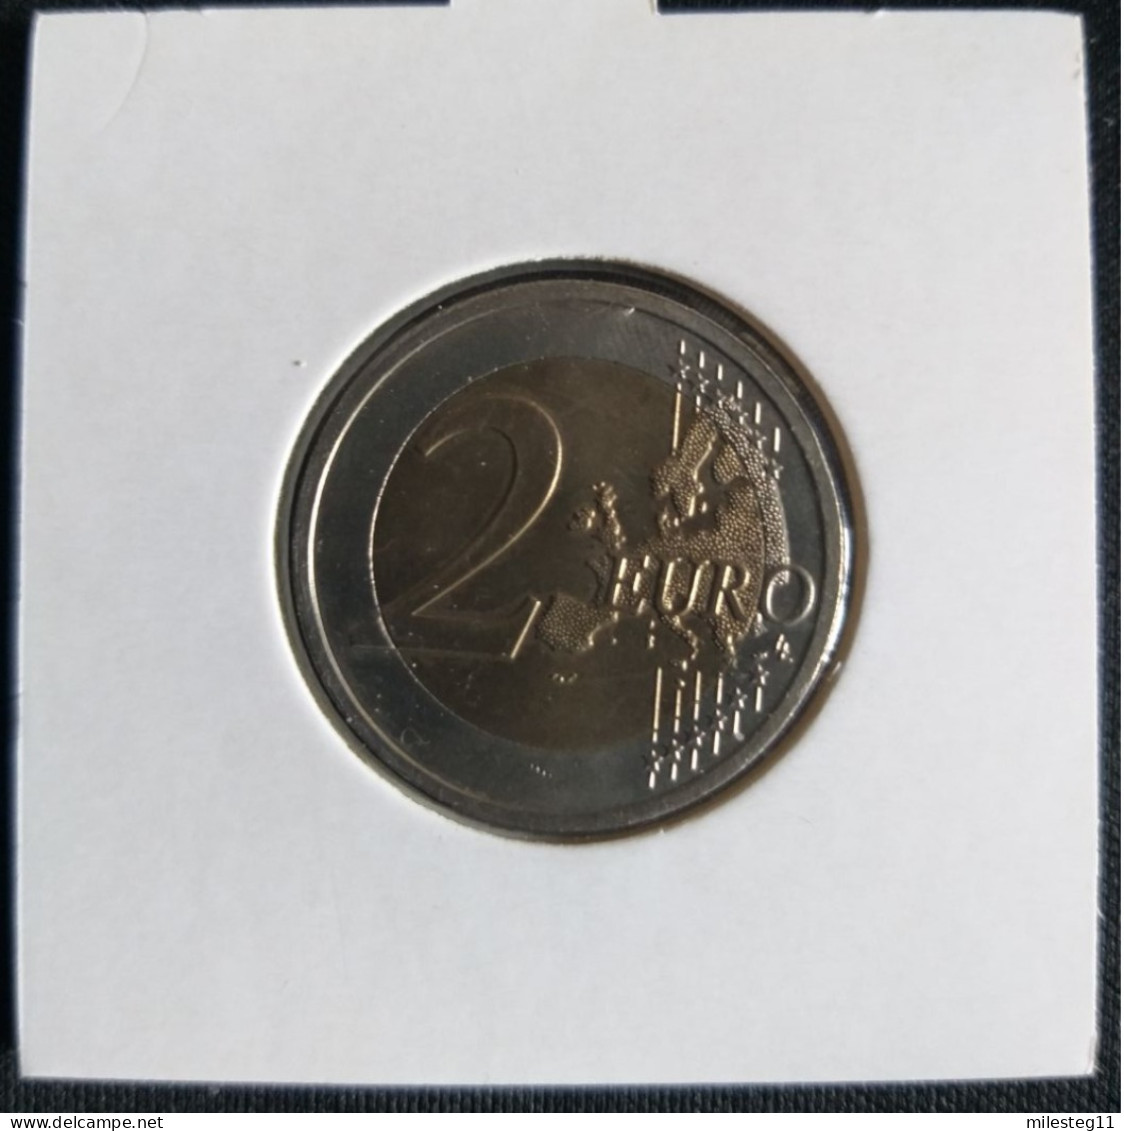 Belgique 2 Euro Commémorative De 2009 (10e Anniversaire De L'Union Monétaire Et Economique) - België